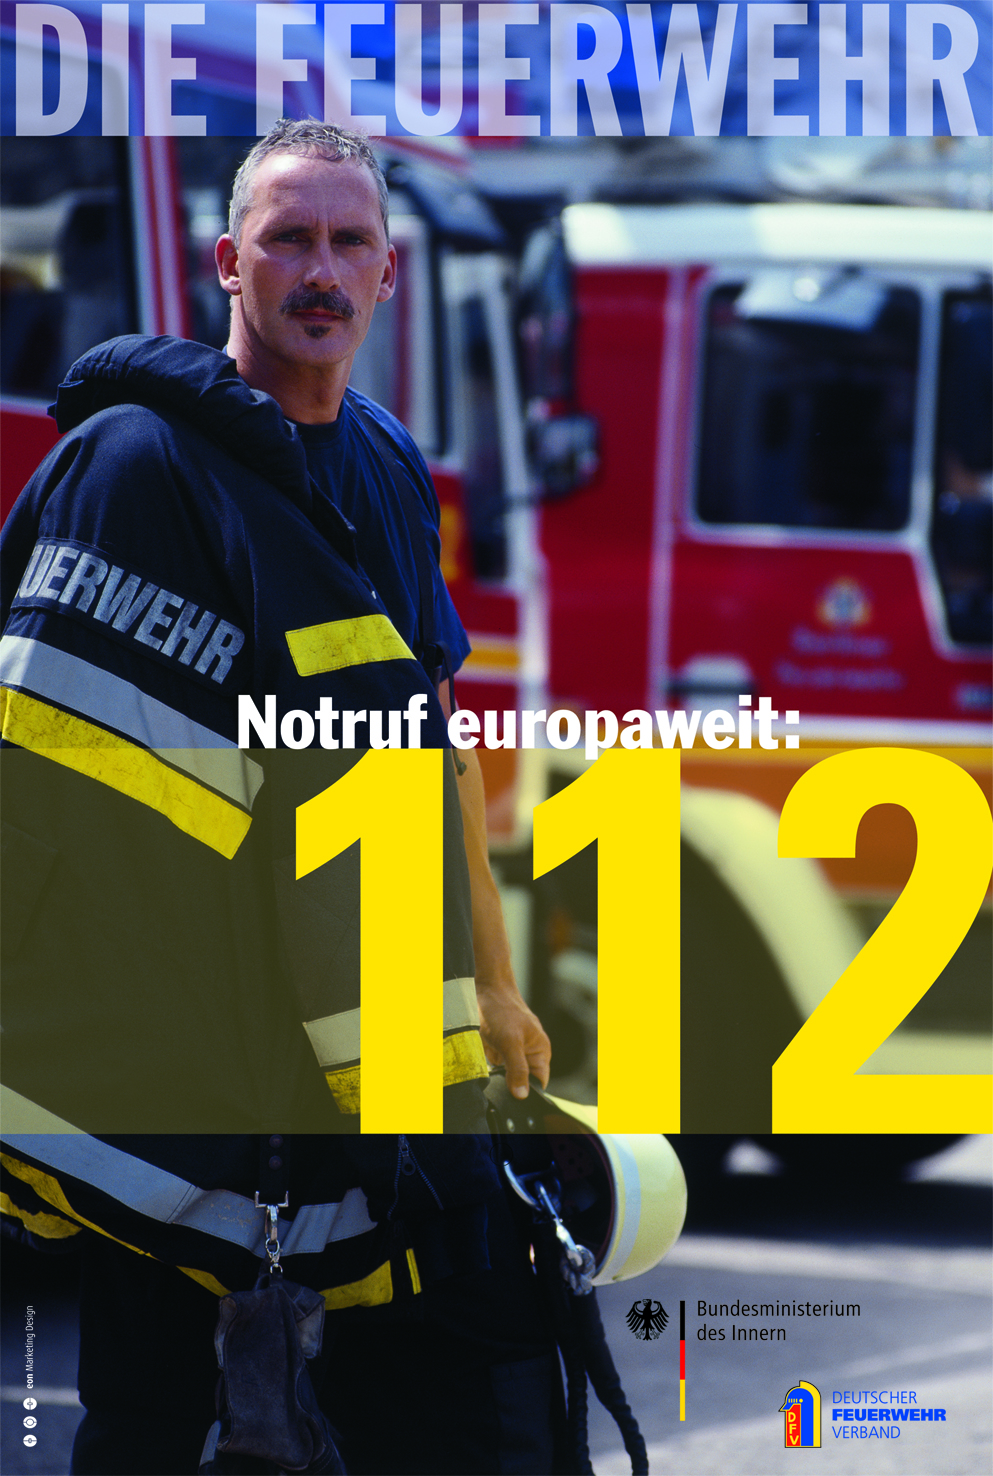 Europaweiter Notruf 112